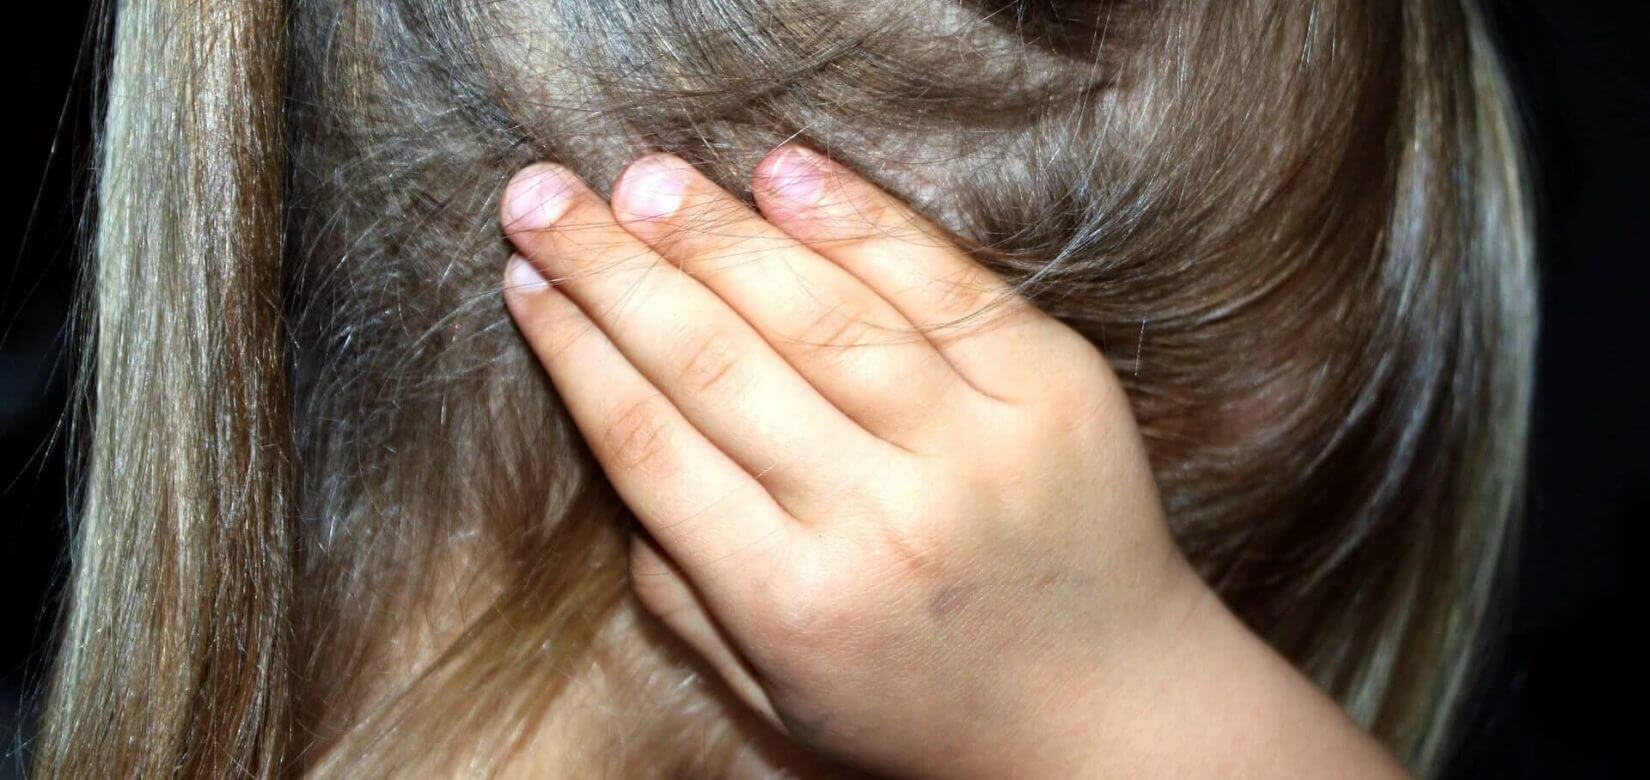 Νέα Σμύρνη: Βίαζε και βασάνιζε άγρια τη 10χρονη κόρη του - Την έκαιγε στο “μάτι” της κουζίνας (φωτό)